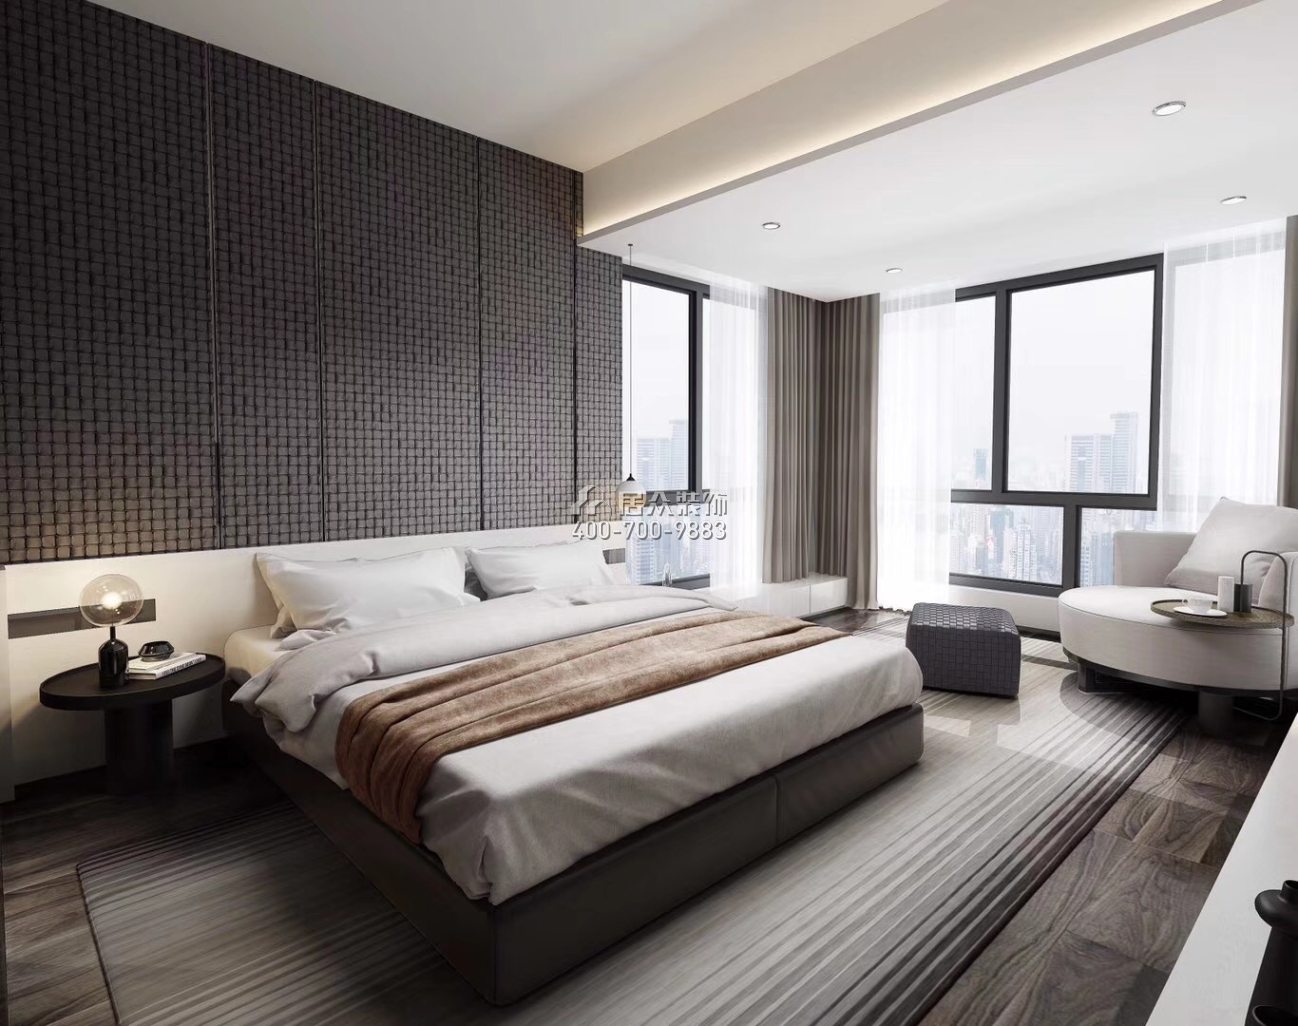 京基濱河時代廣場188平方米現代簡約風格平層戶型臥室裝修效果圖